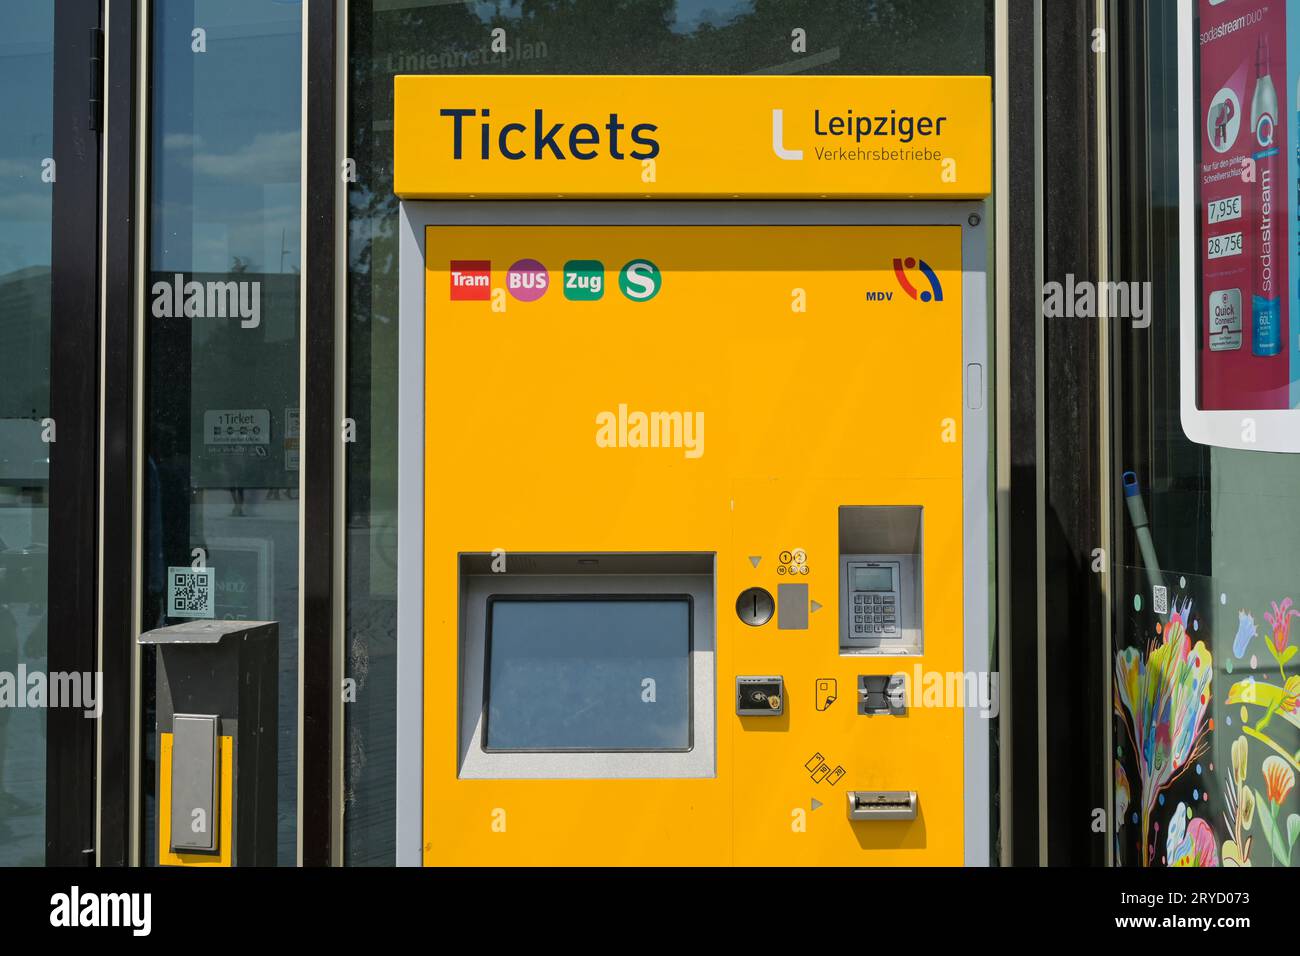 Biglietto Automat, Leipziger Verkehrsbetriebe, Lipsia, Sachsen, Deutschland Foto Stock